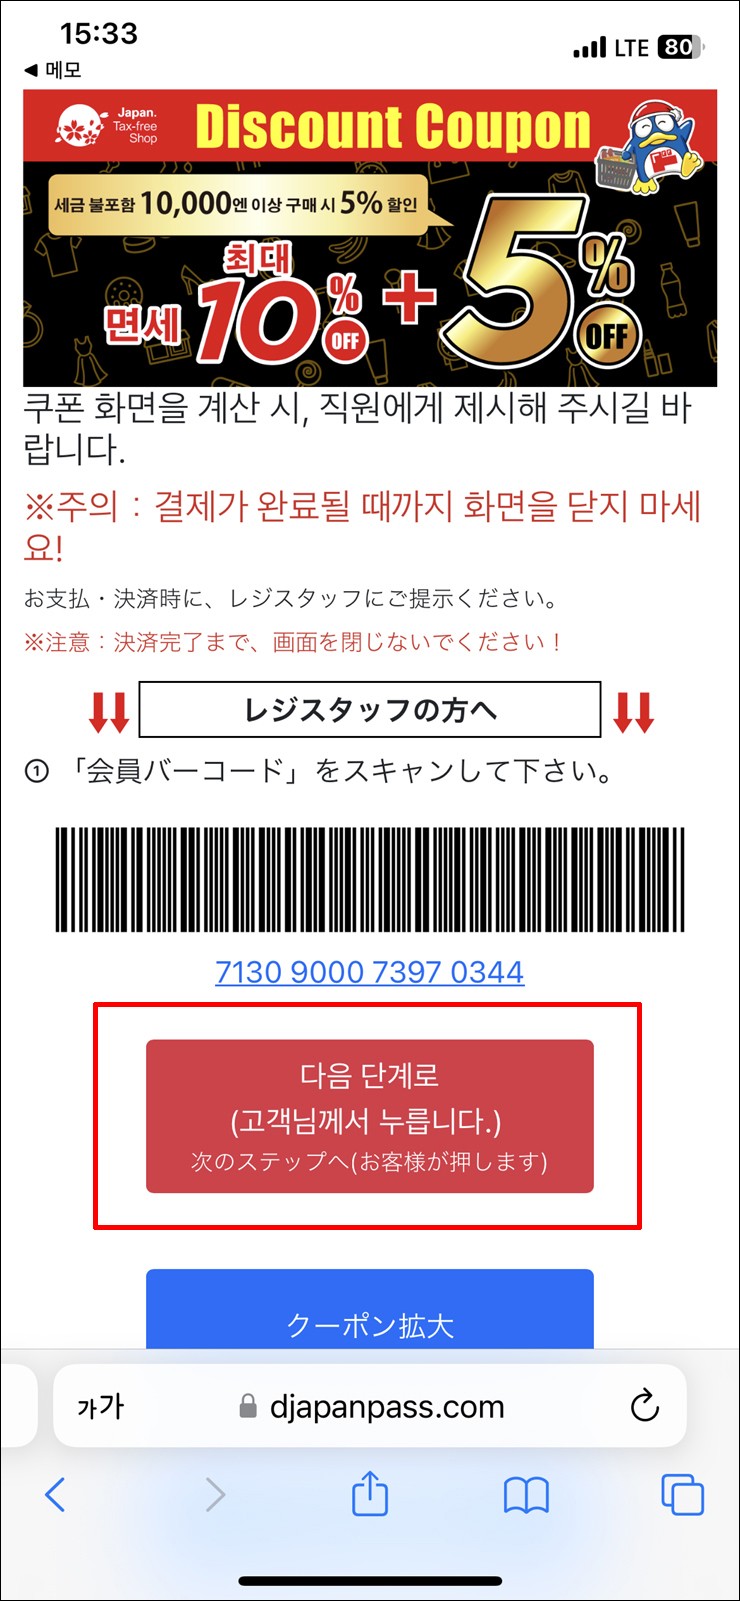 일본여행 추천 일본 쇼핑 돈키호테 쇼핑리스트 할인쿠폰 면세 금액